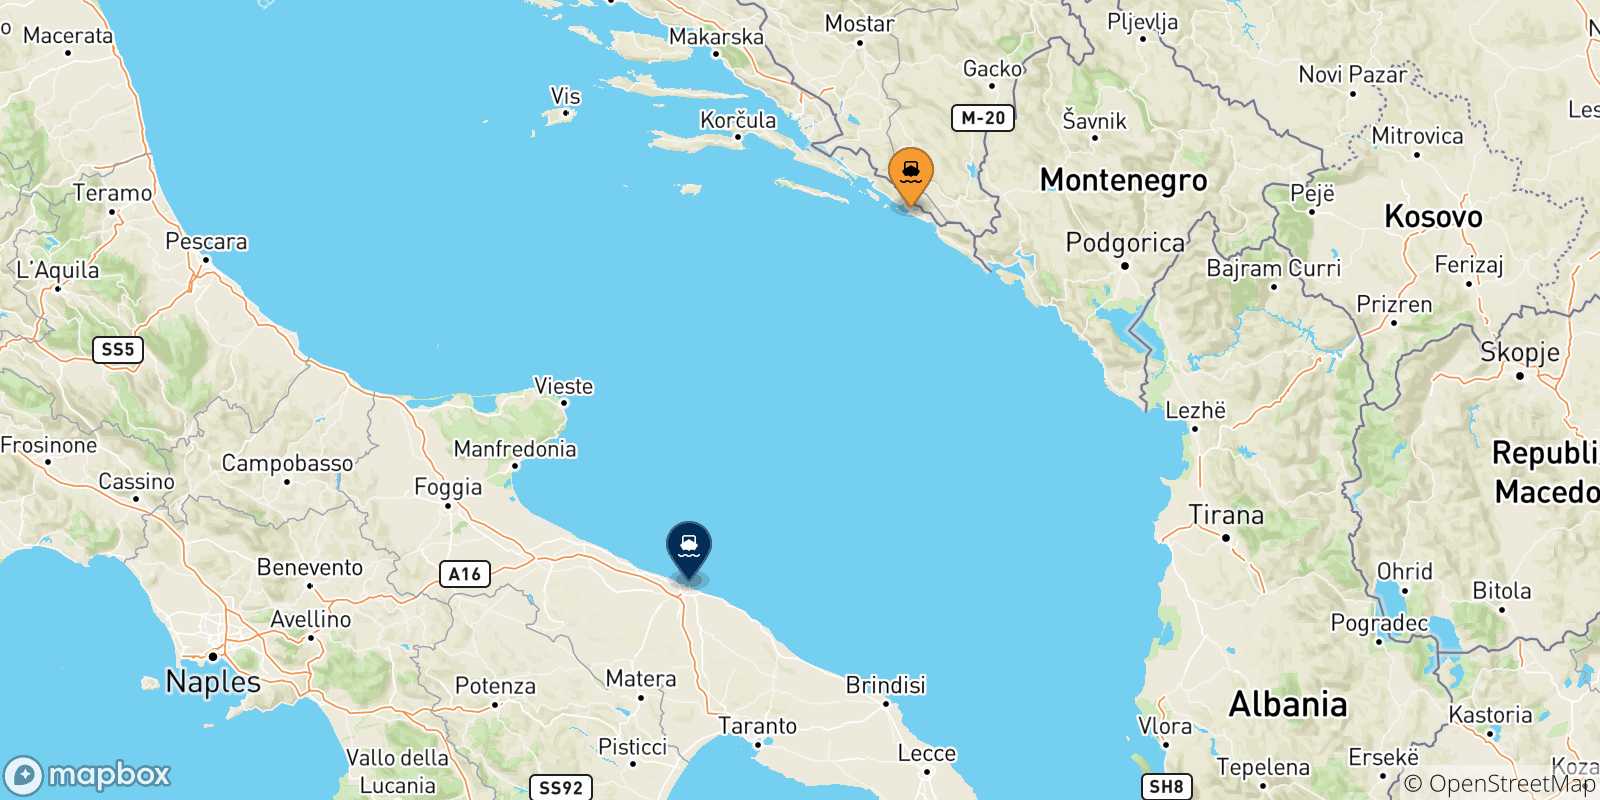 Mappa delle possibili rotte tra la Croazia e Bari